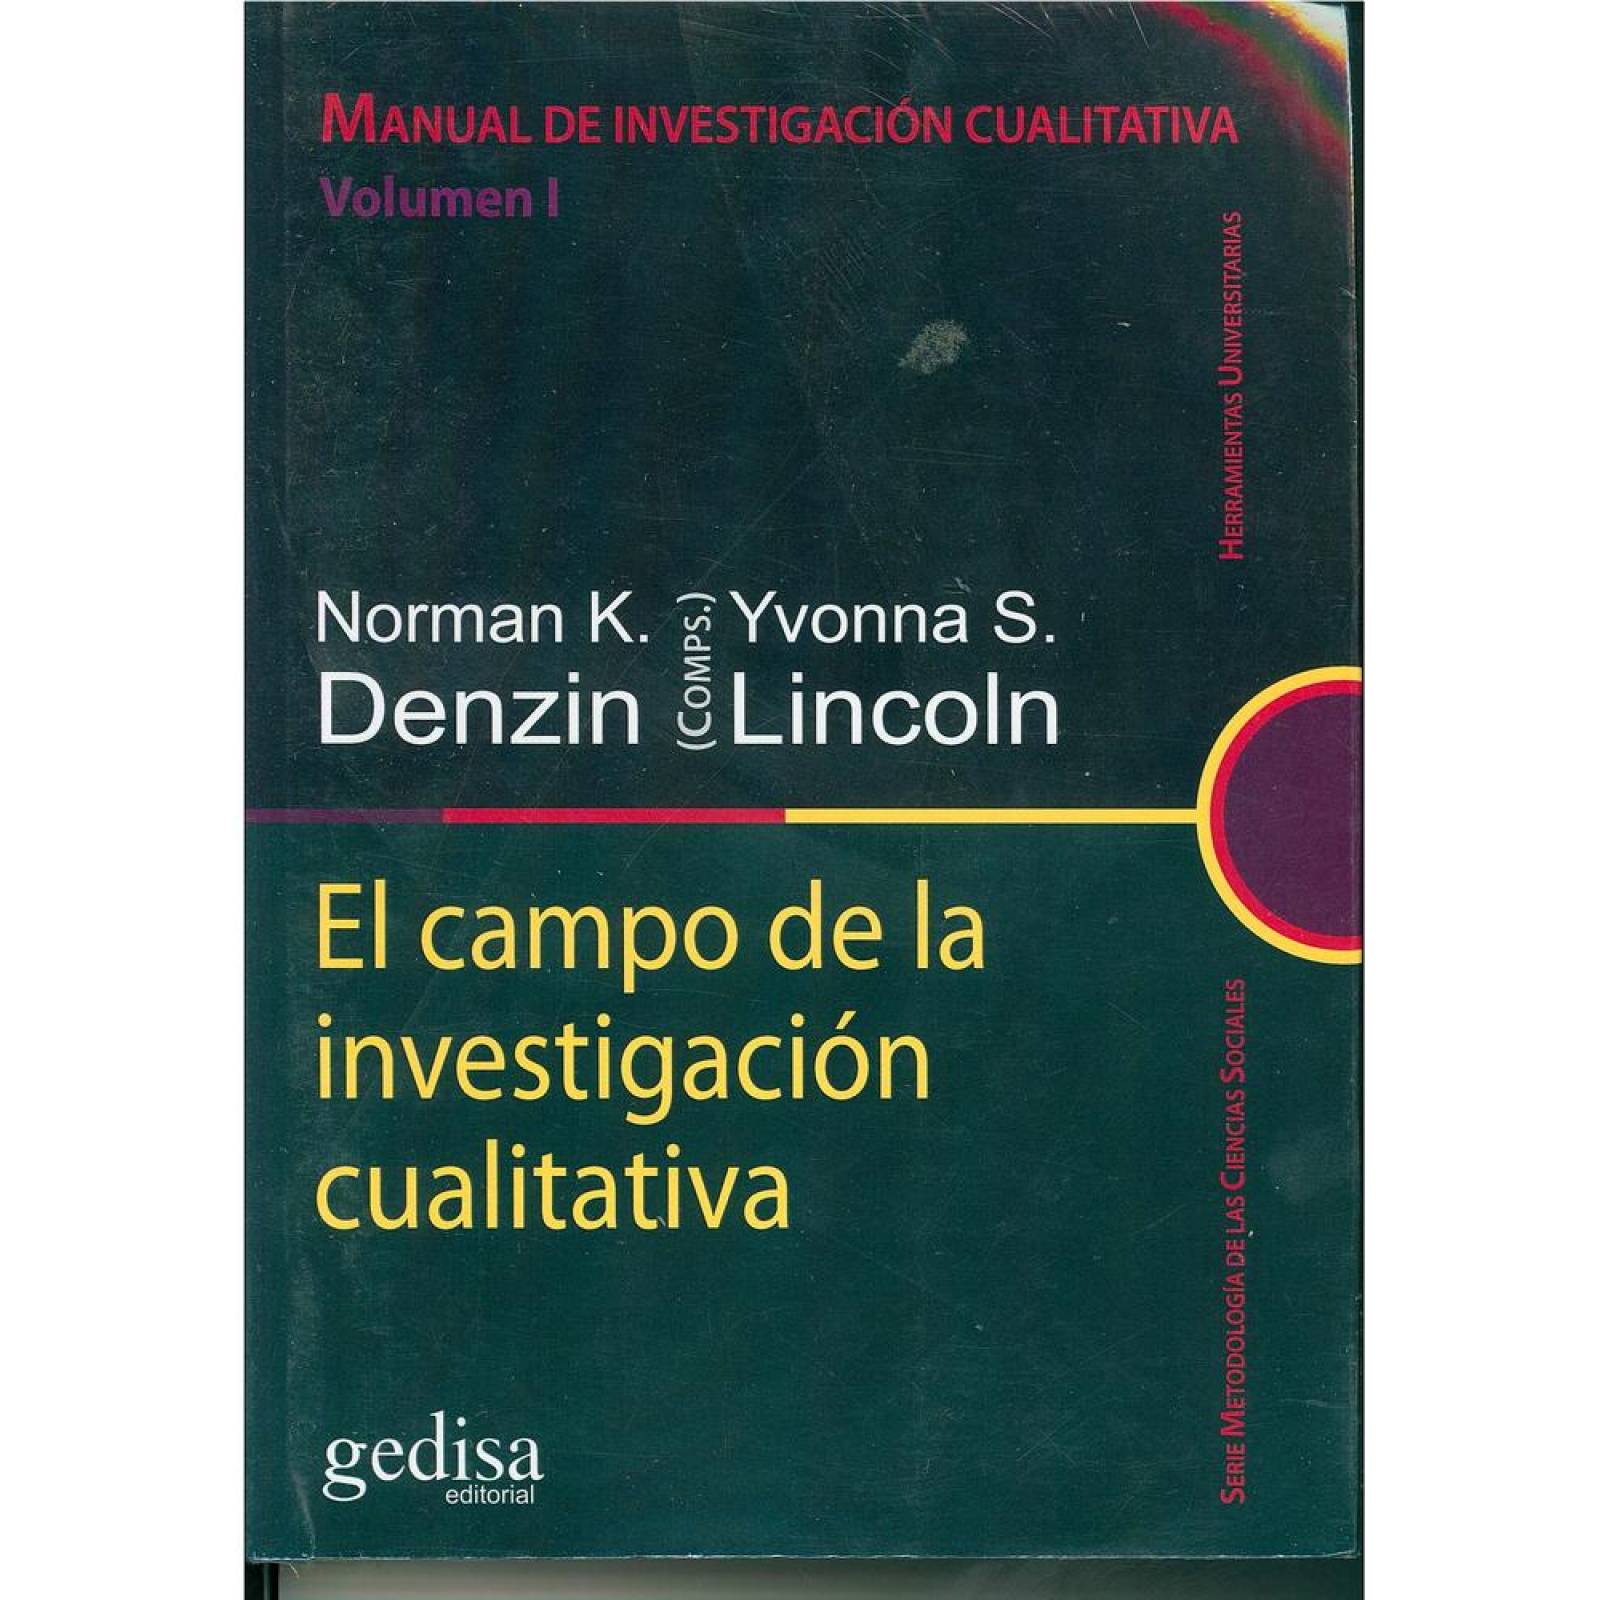 Manual de investigación cualitativa Volumen I 